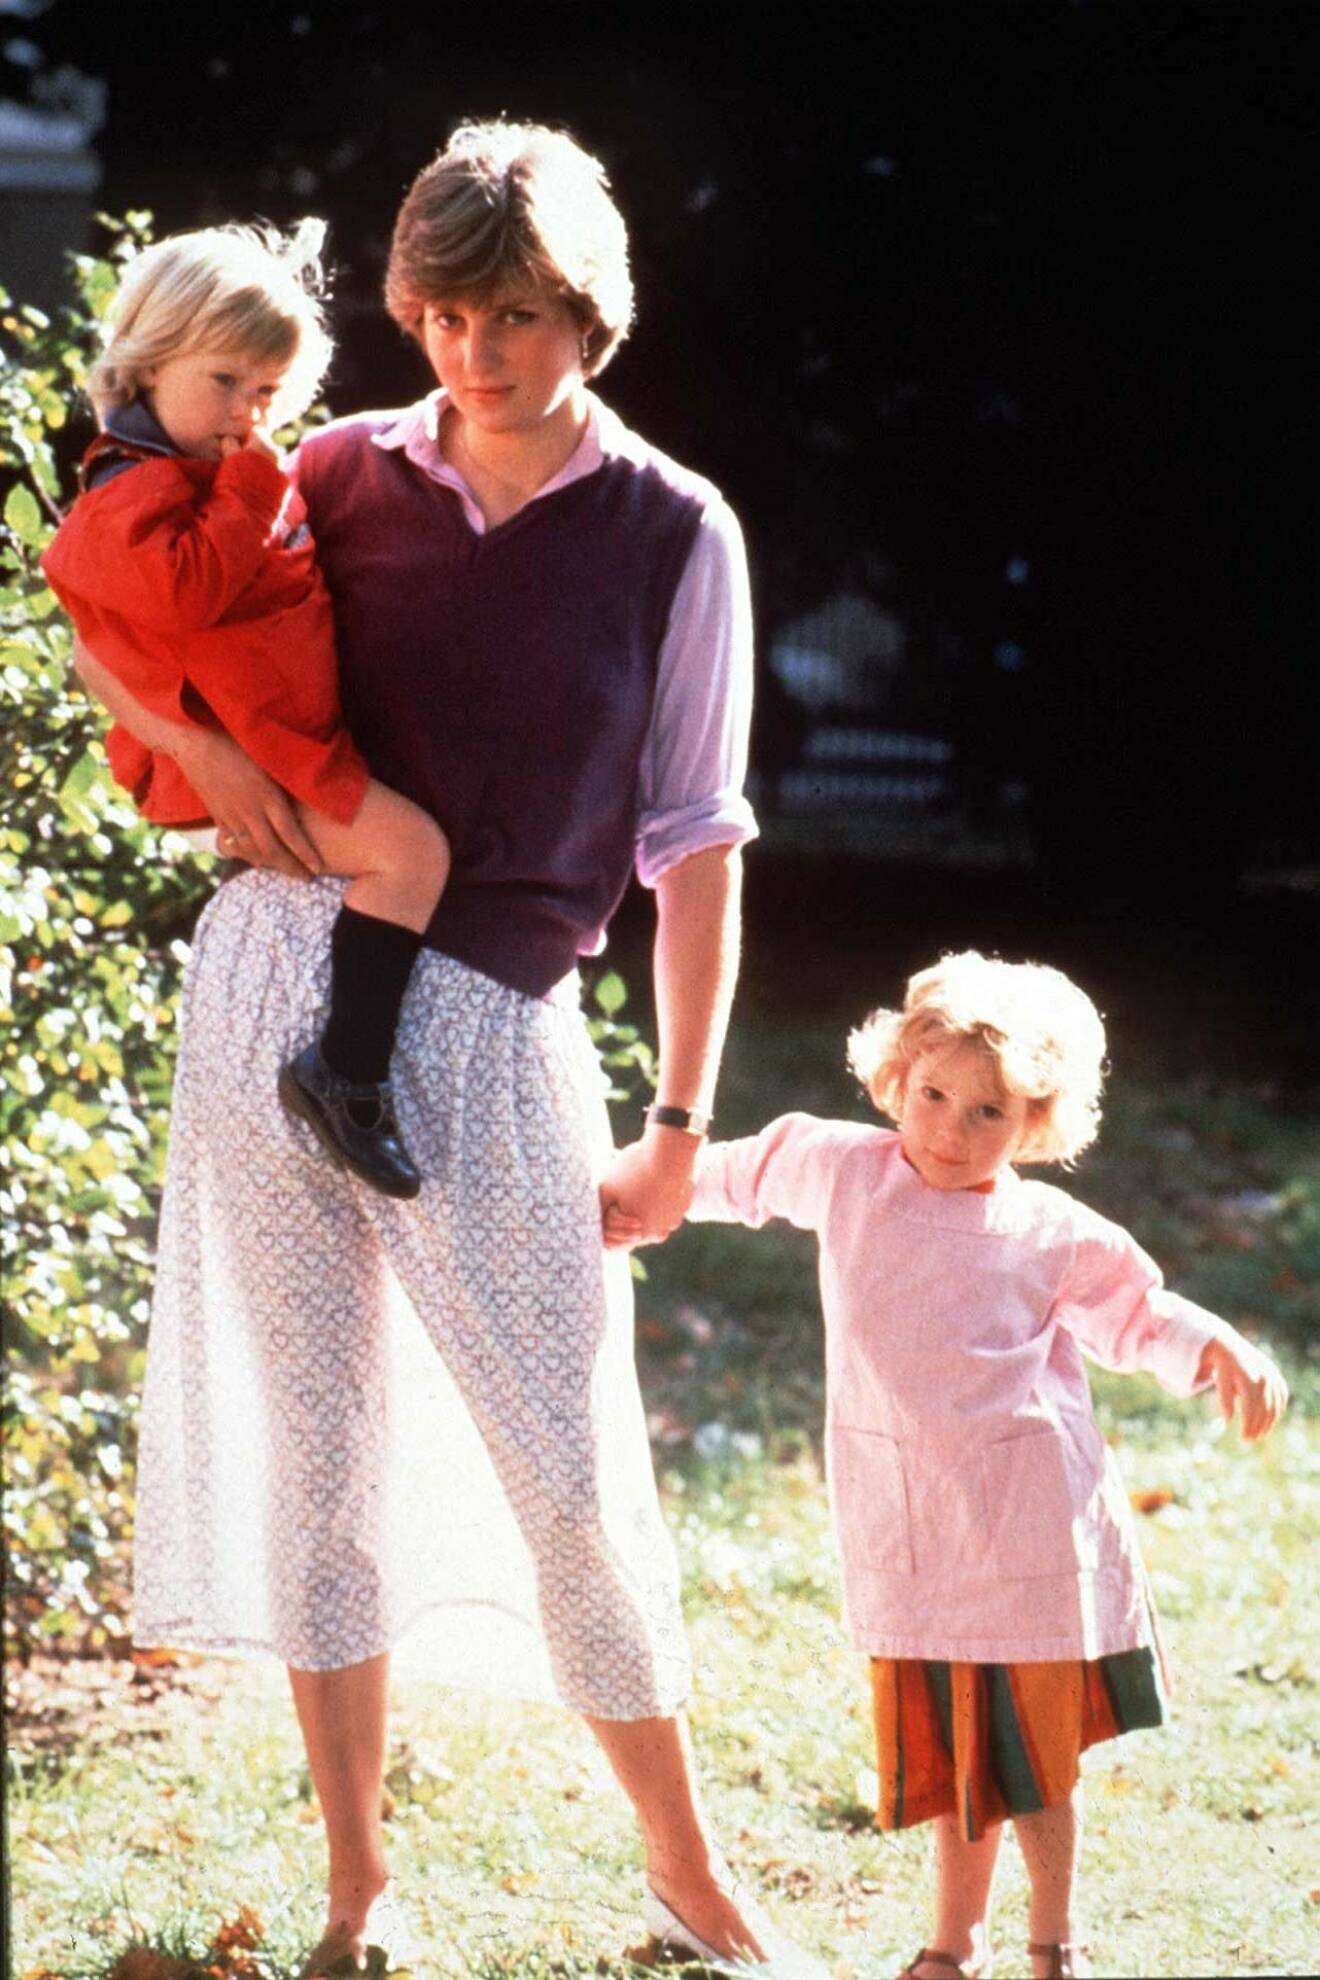 Prinsessan Diana i en skir maxikjol. I famnen bär hon ett barn och hon håller ett annat barn i andra handen. Bilden är tagen 1980 på förskolan där hon jobbade på innan hon gifte sig med Prins Charles.